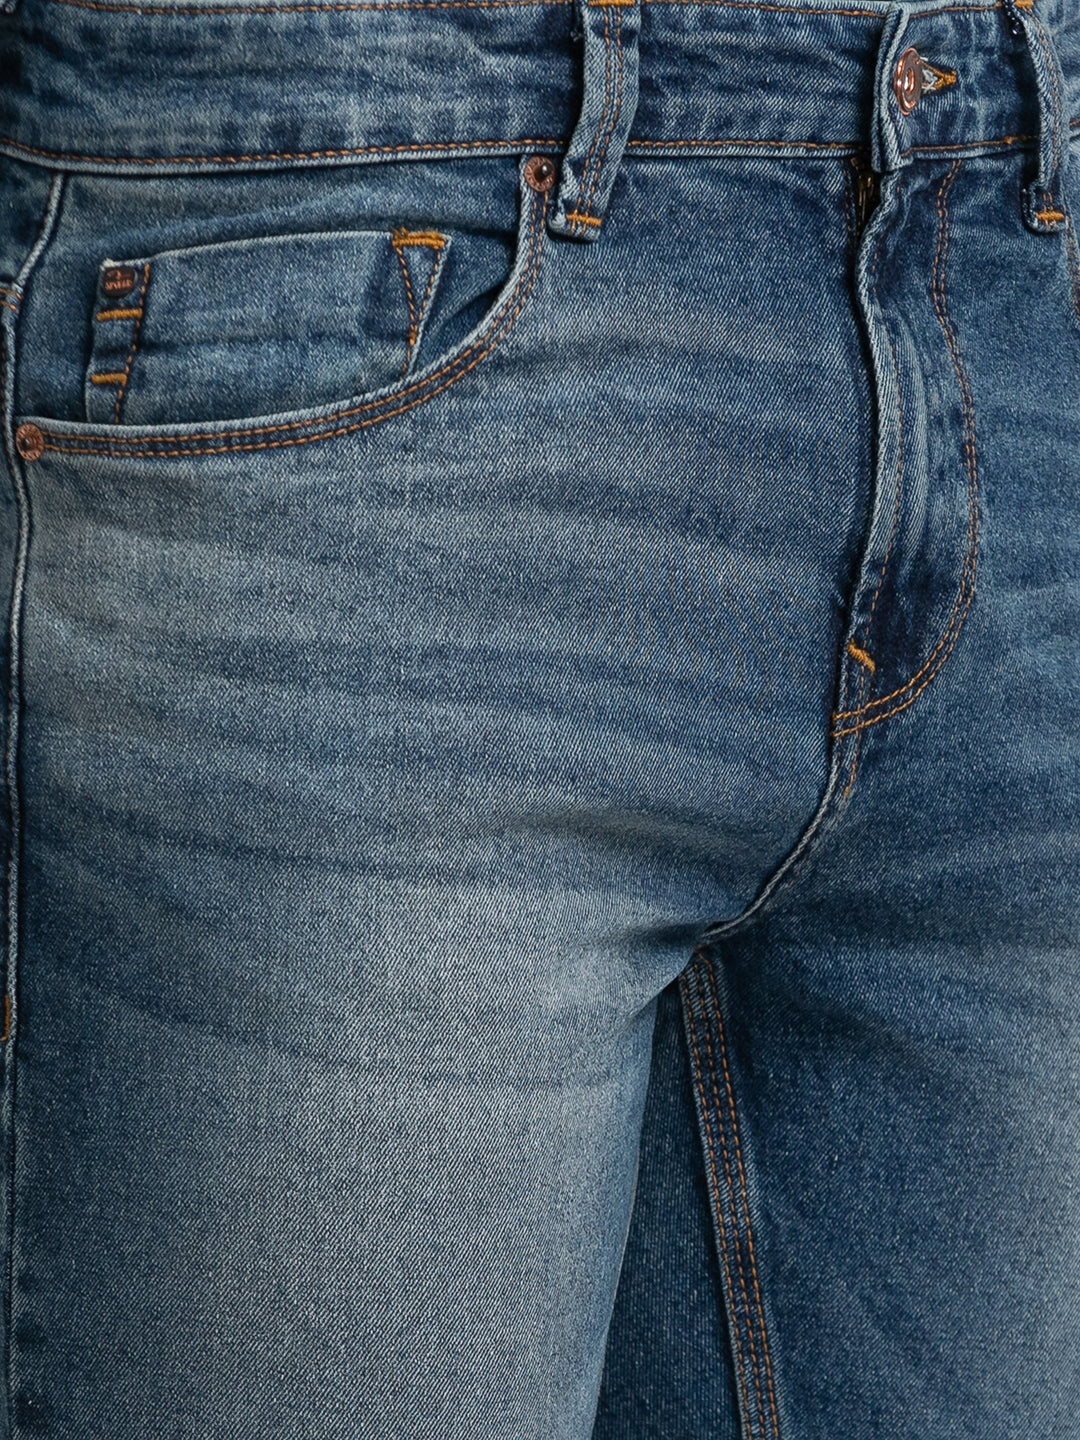 Spykar Vintage Blue Cotton Super Slim Fit Tapered Length Jeans For Men (Super Skinny)